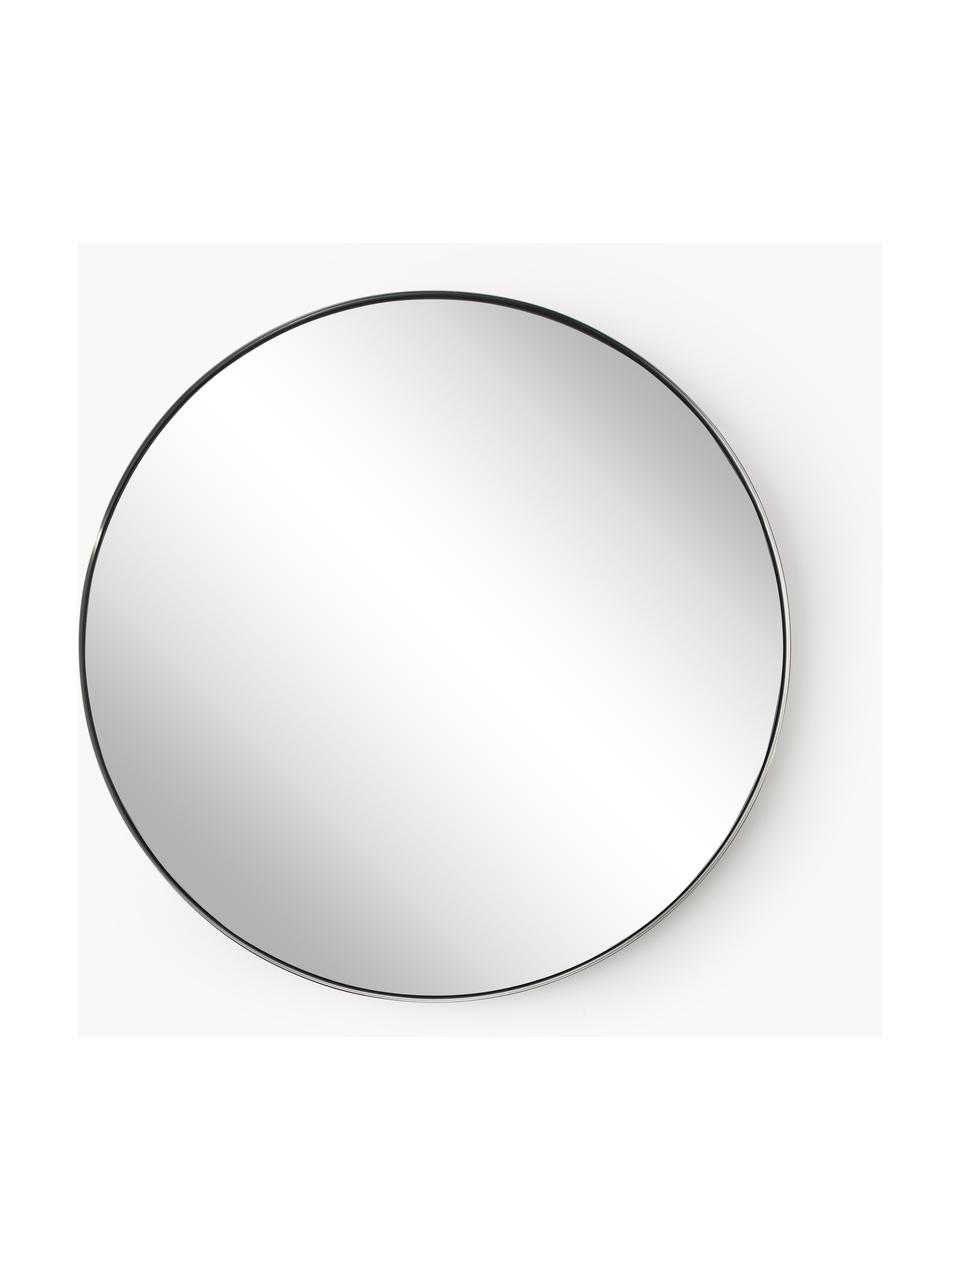 Runder Wandspiegel Lacie, Rahmen: Metall, beschichtet, Rückseite: Mitteldichte Holzfaserpla, Spiegelfläche: Spiegelglas, Silberfarben, Ø 72 cm